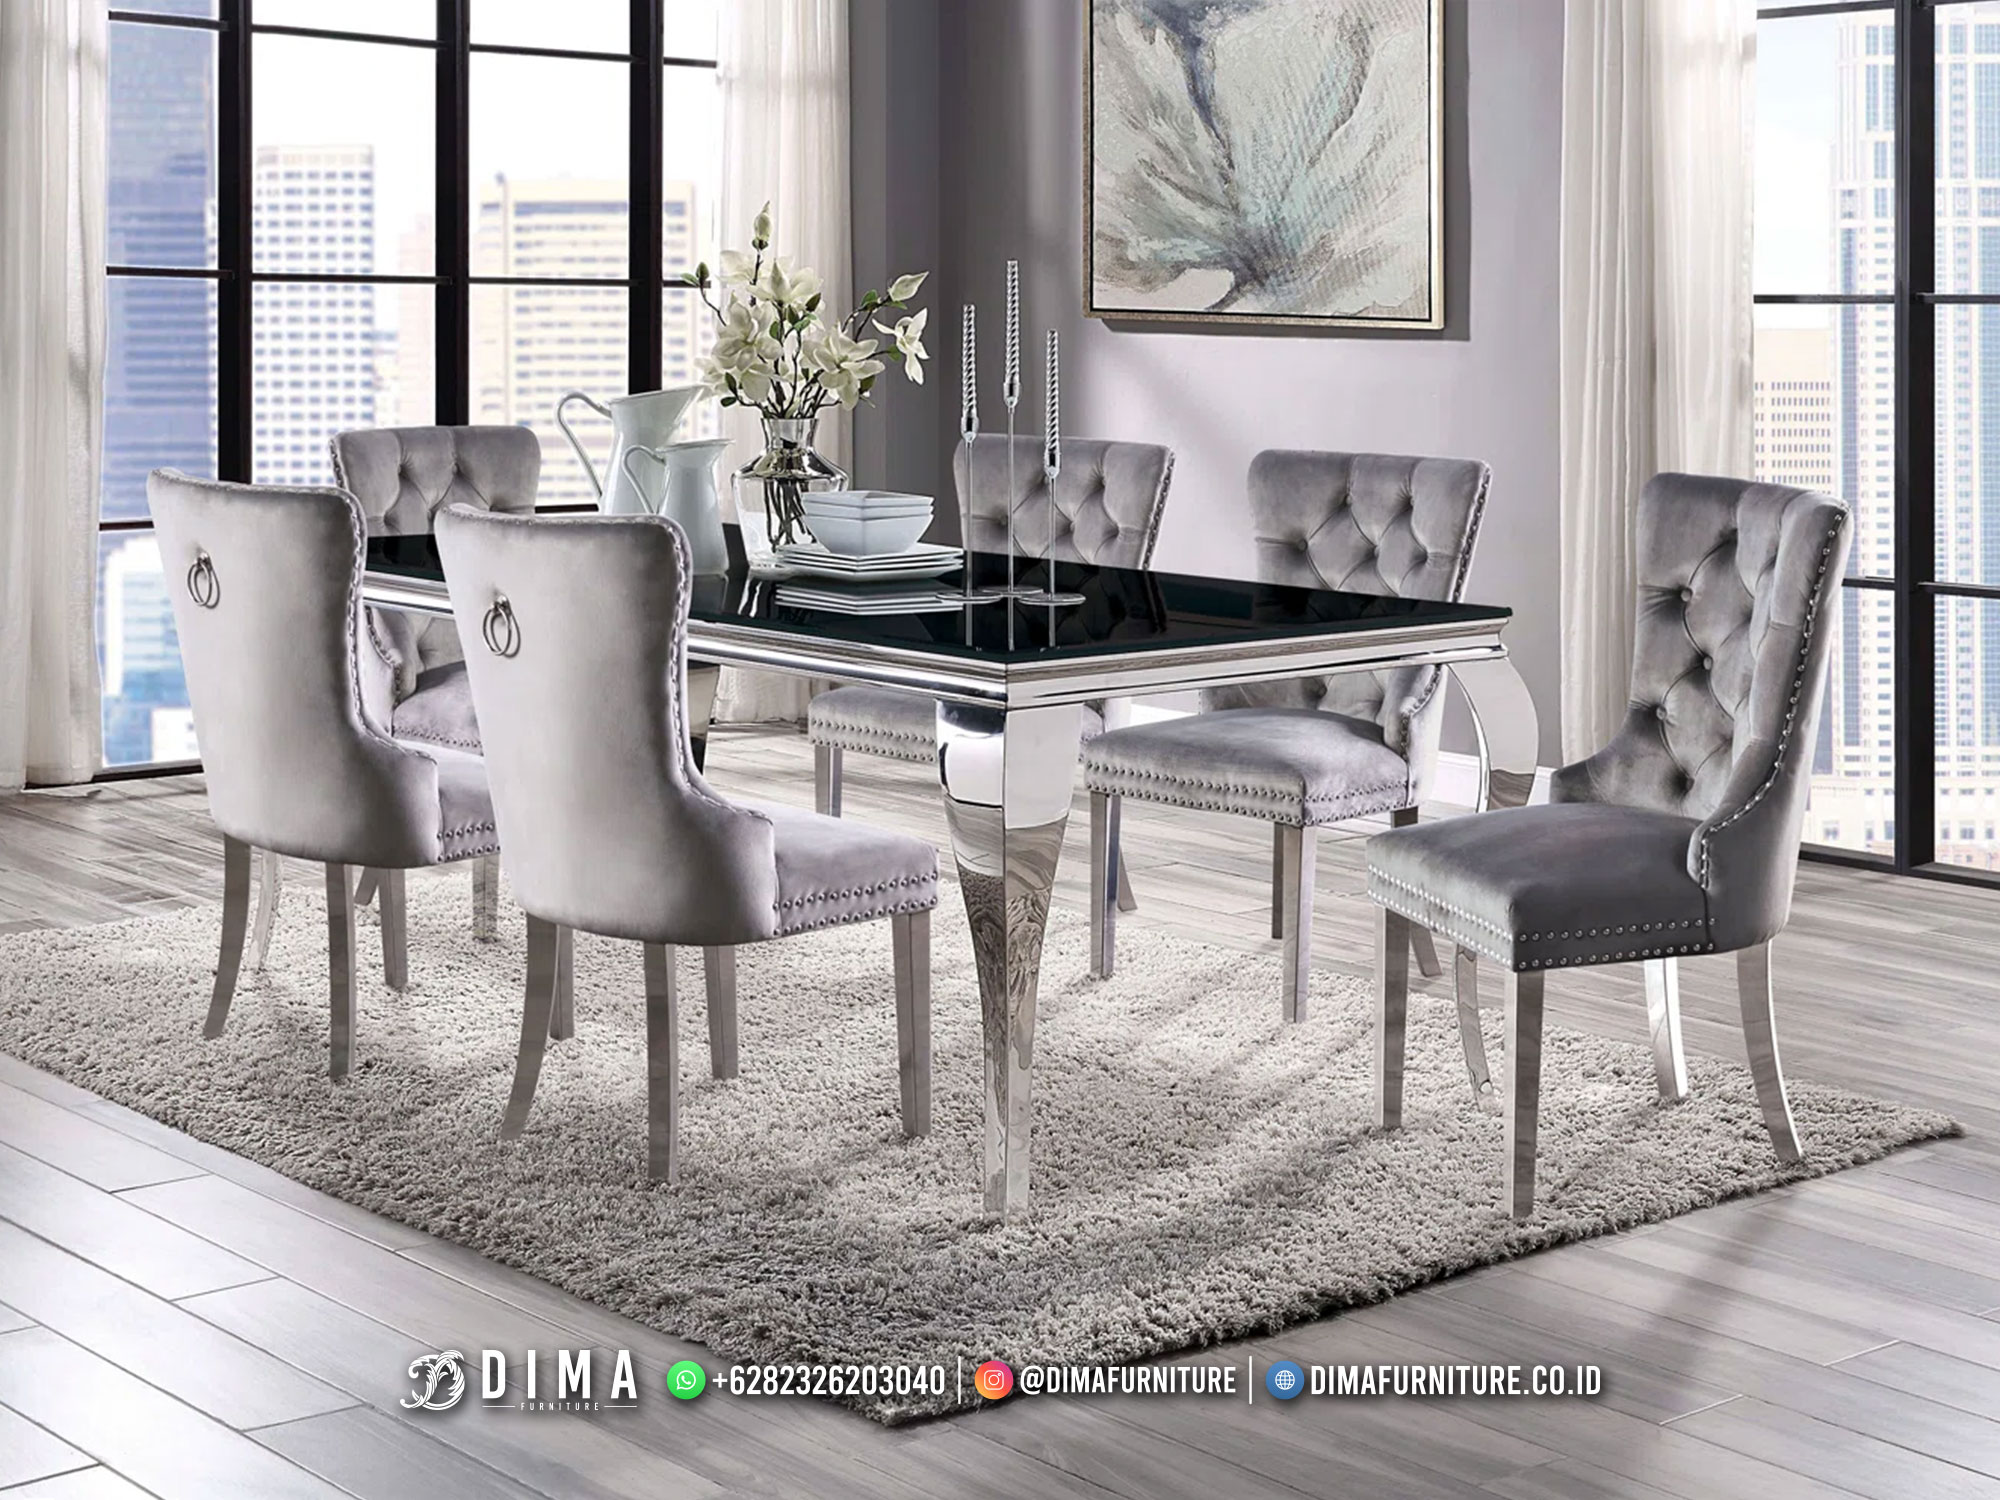 Jual Meja Makan Jepara Minimalis Industrial Furniture Terbaru DF-3094